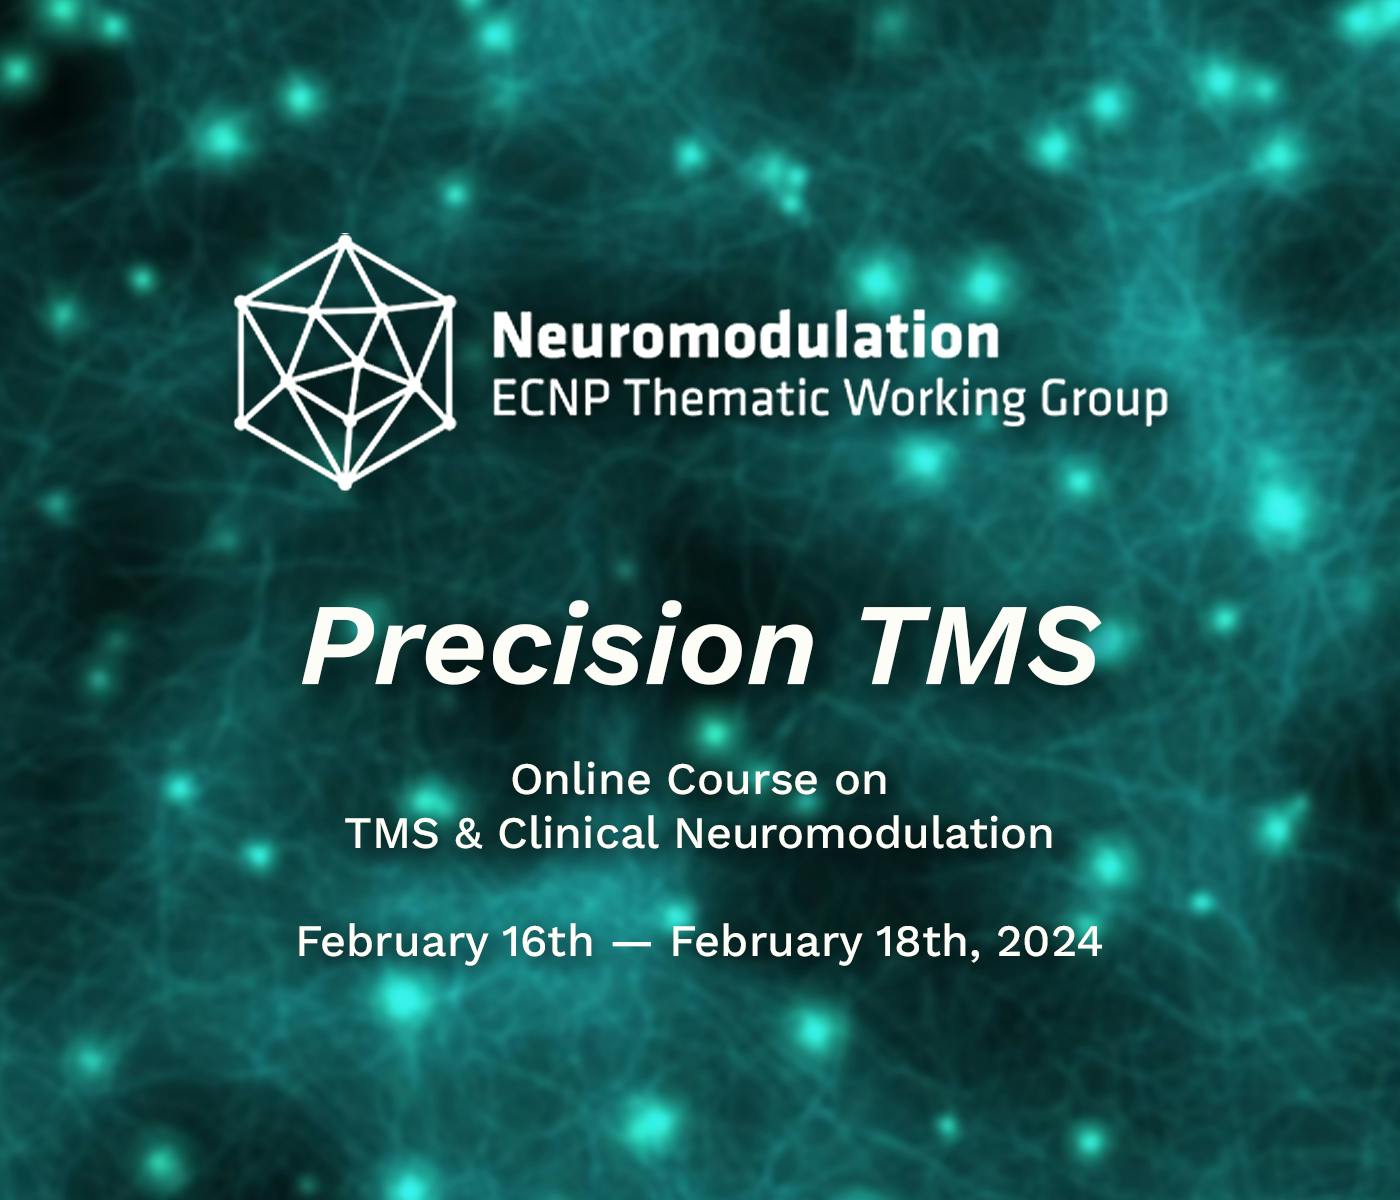 Loghi del Neuromodulation ECNP Thematic Working Group su un'immagine di reti neuronali come sfondo.